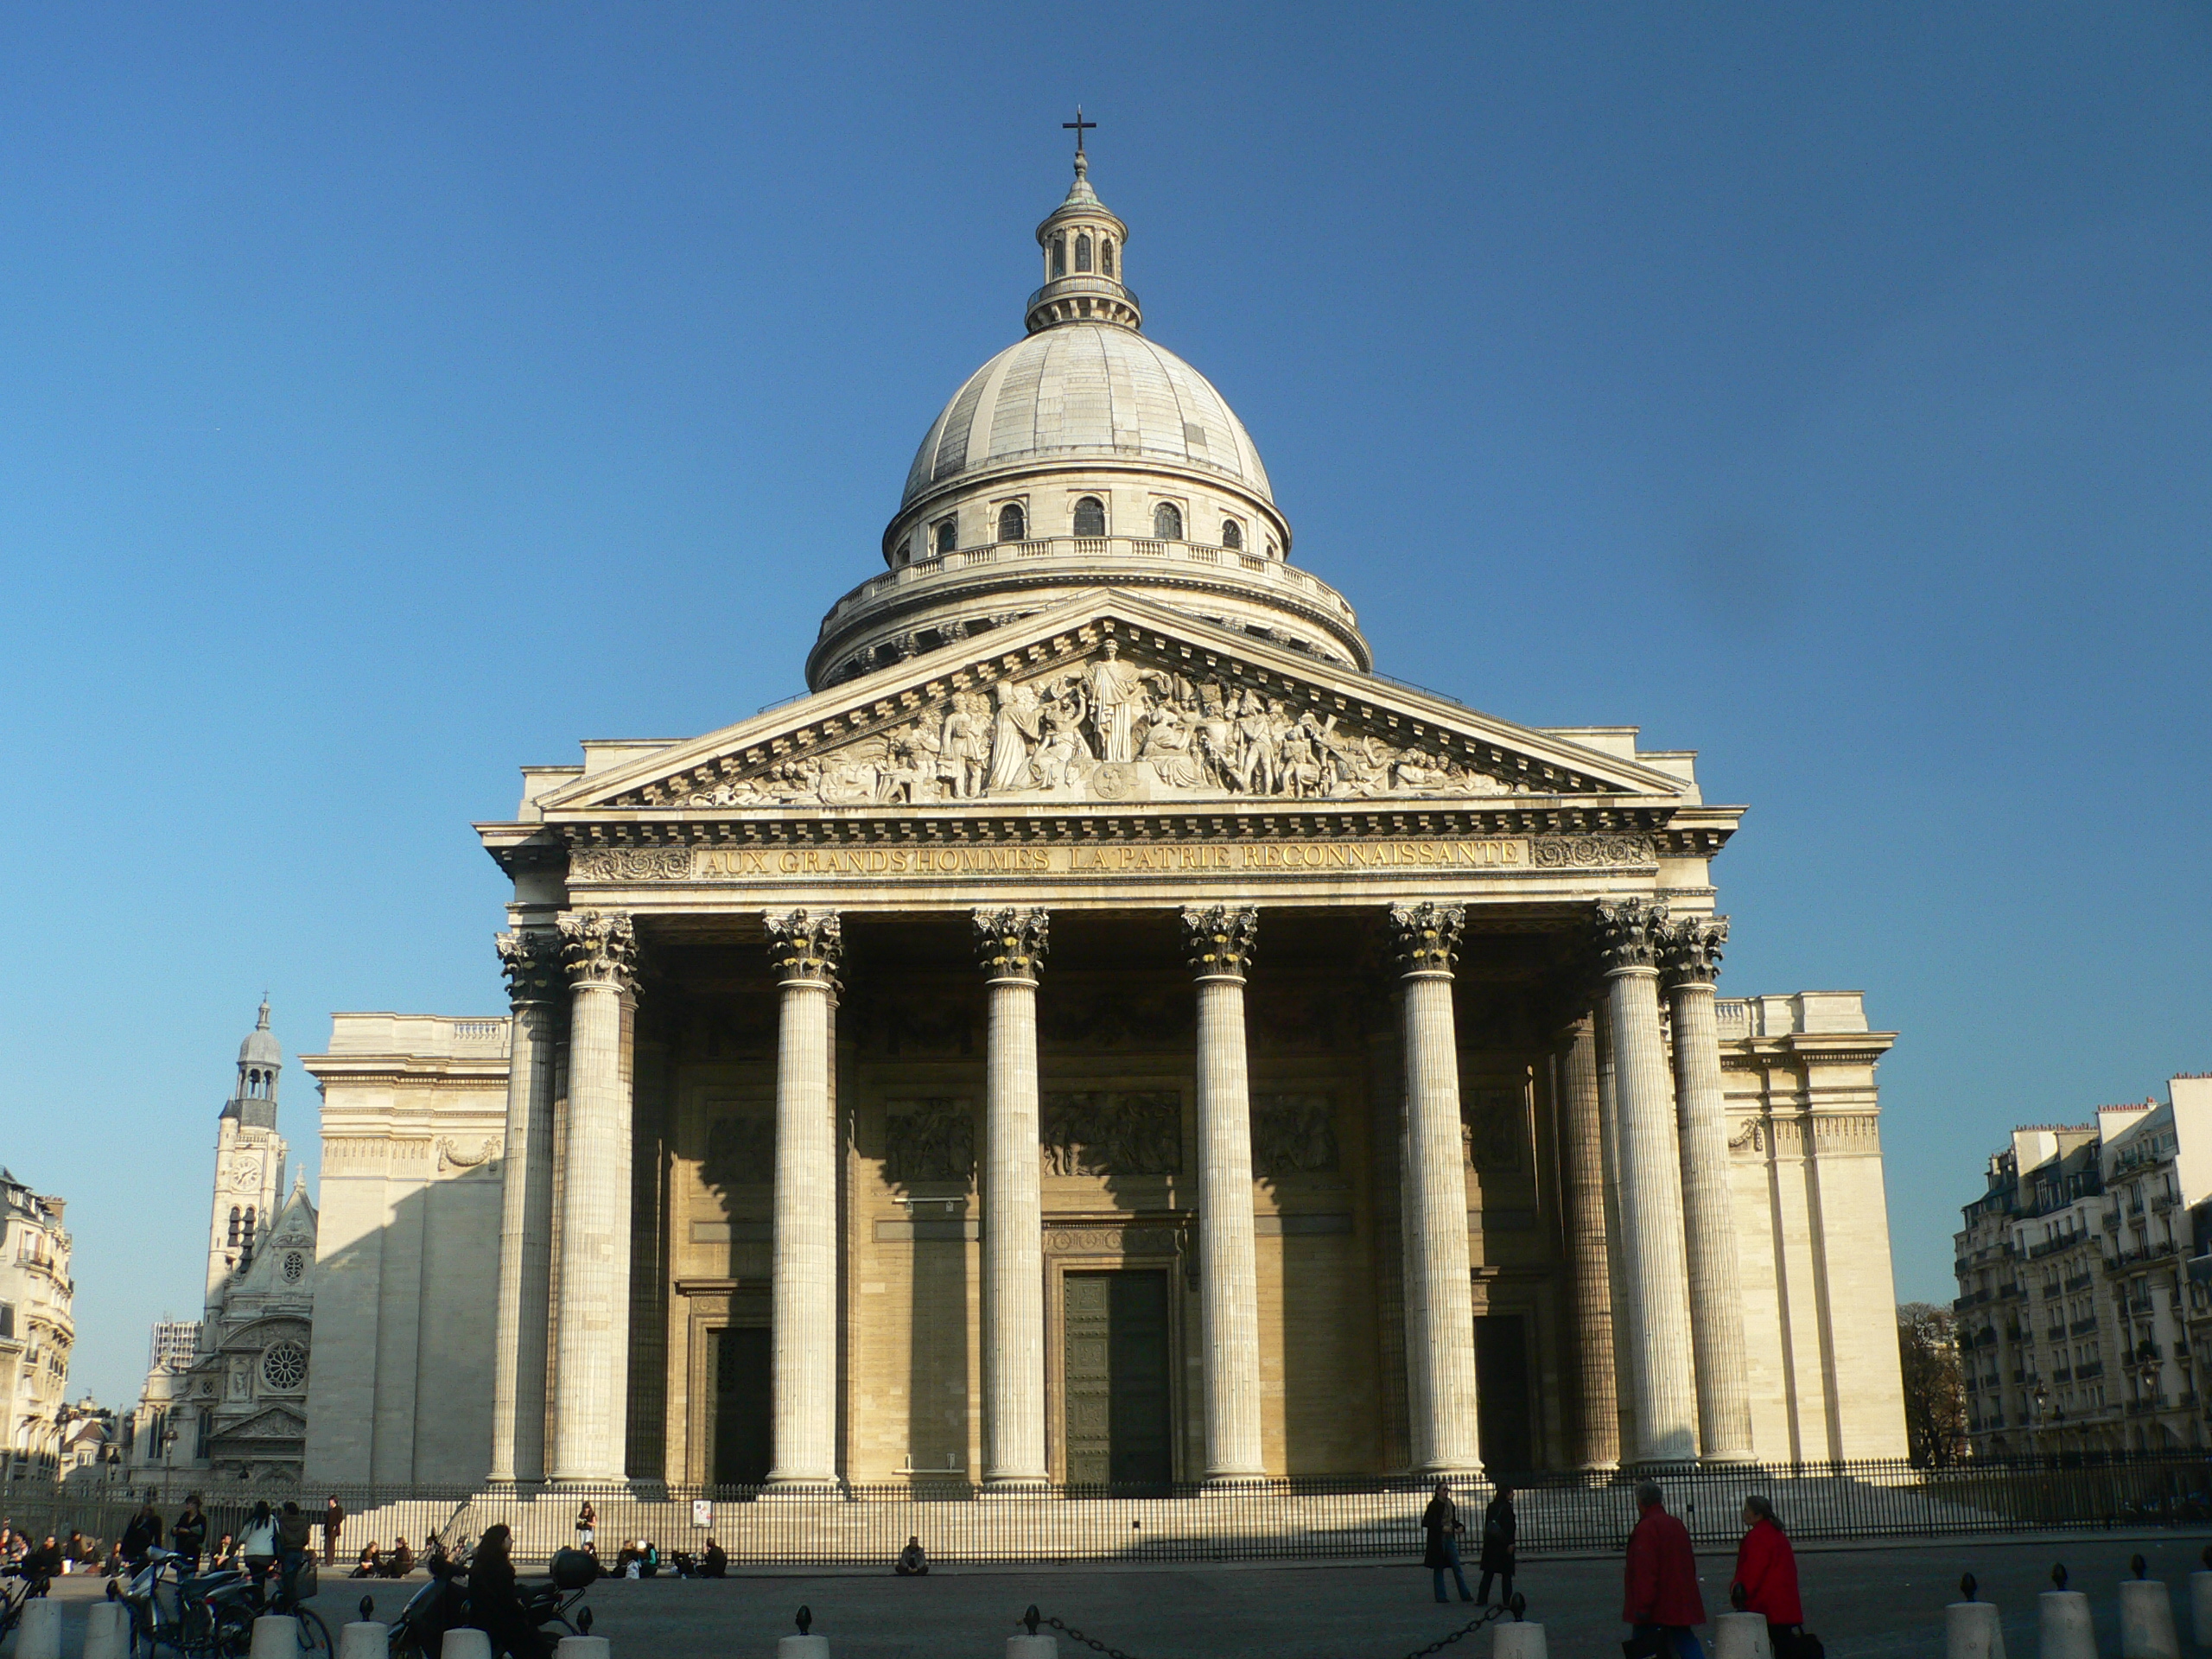 Image du Panthéon : vue de l'entrée